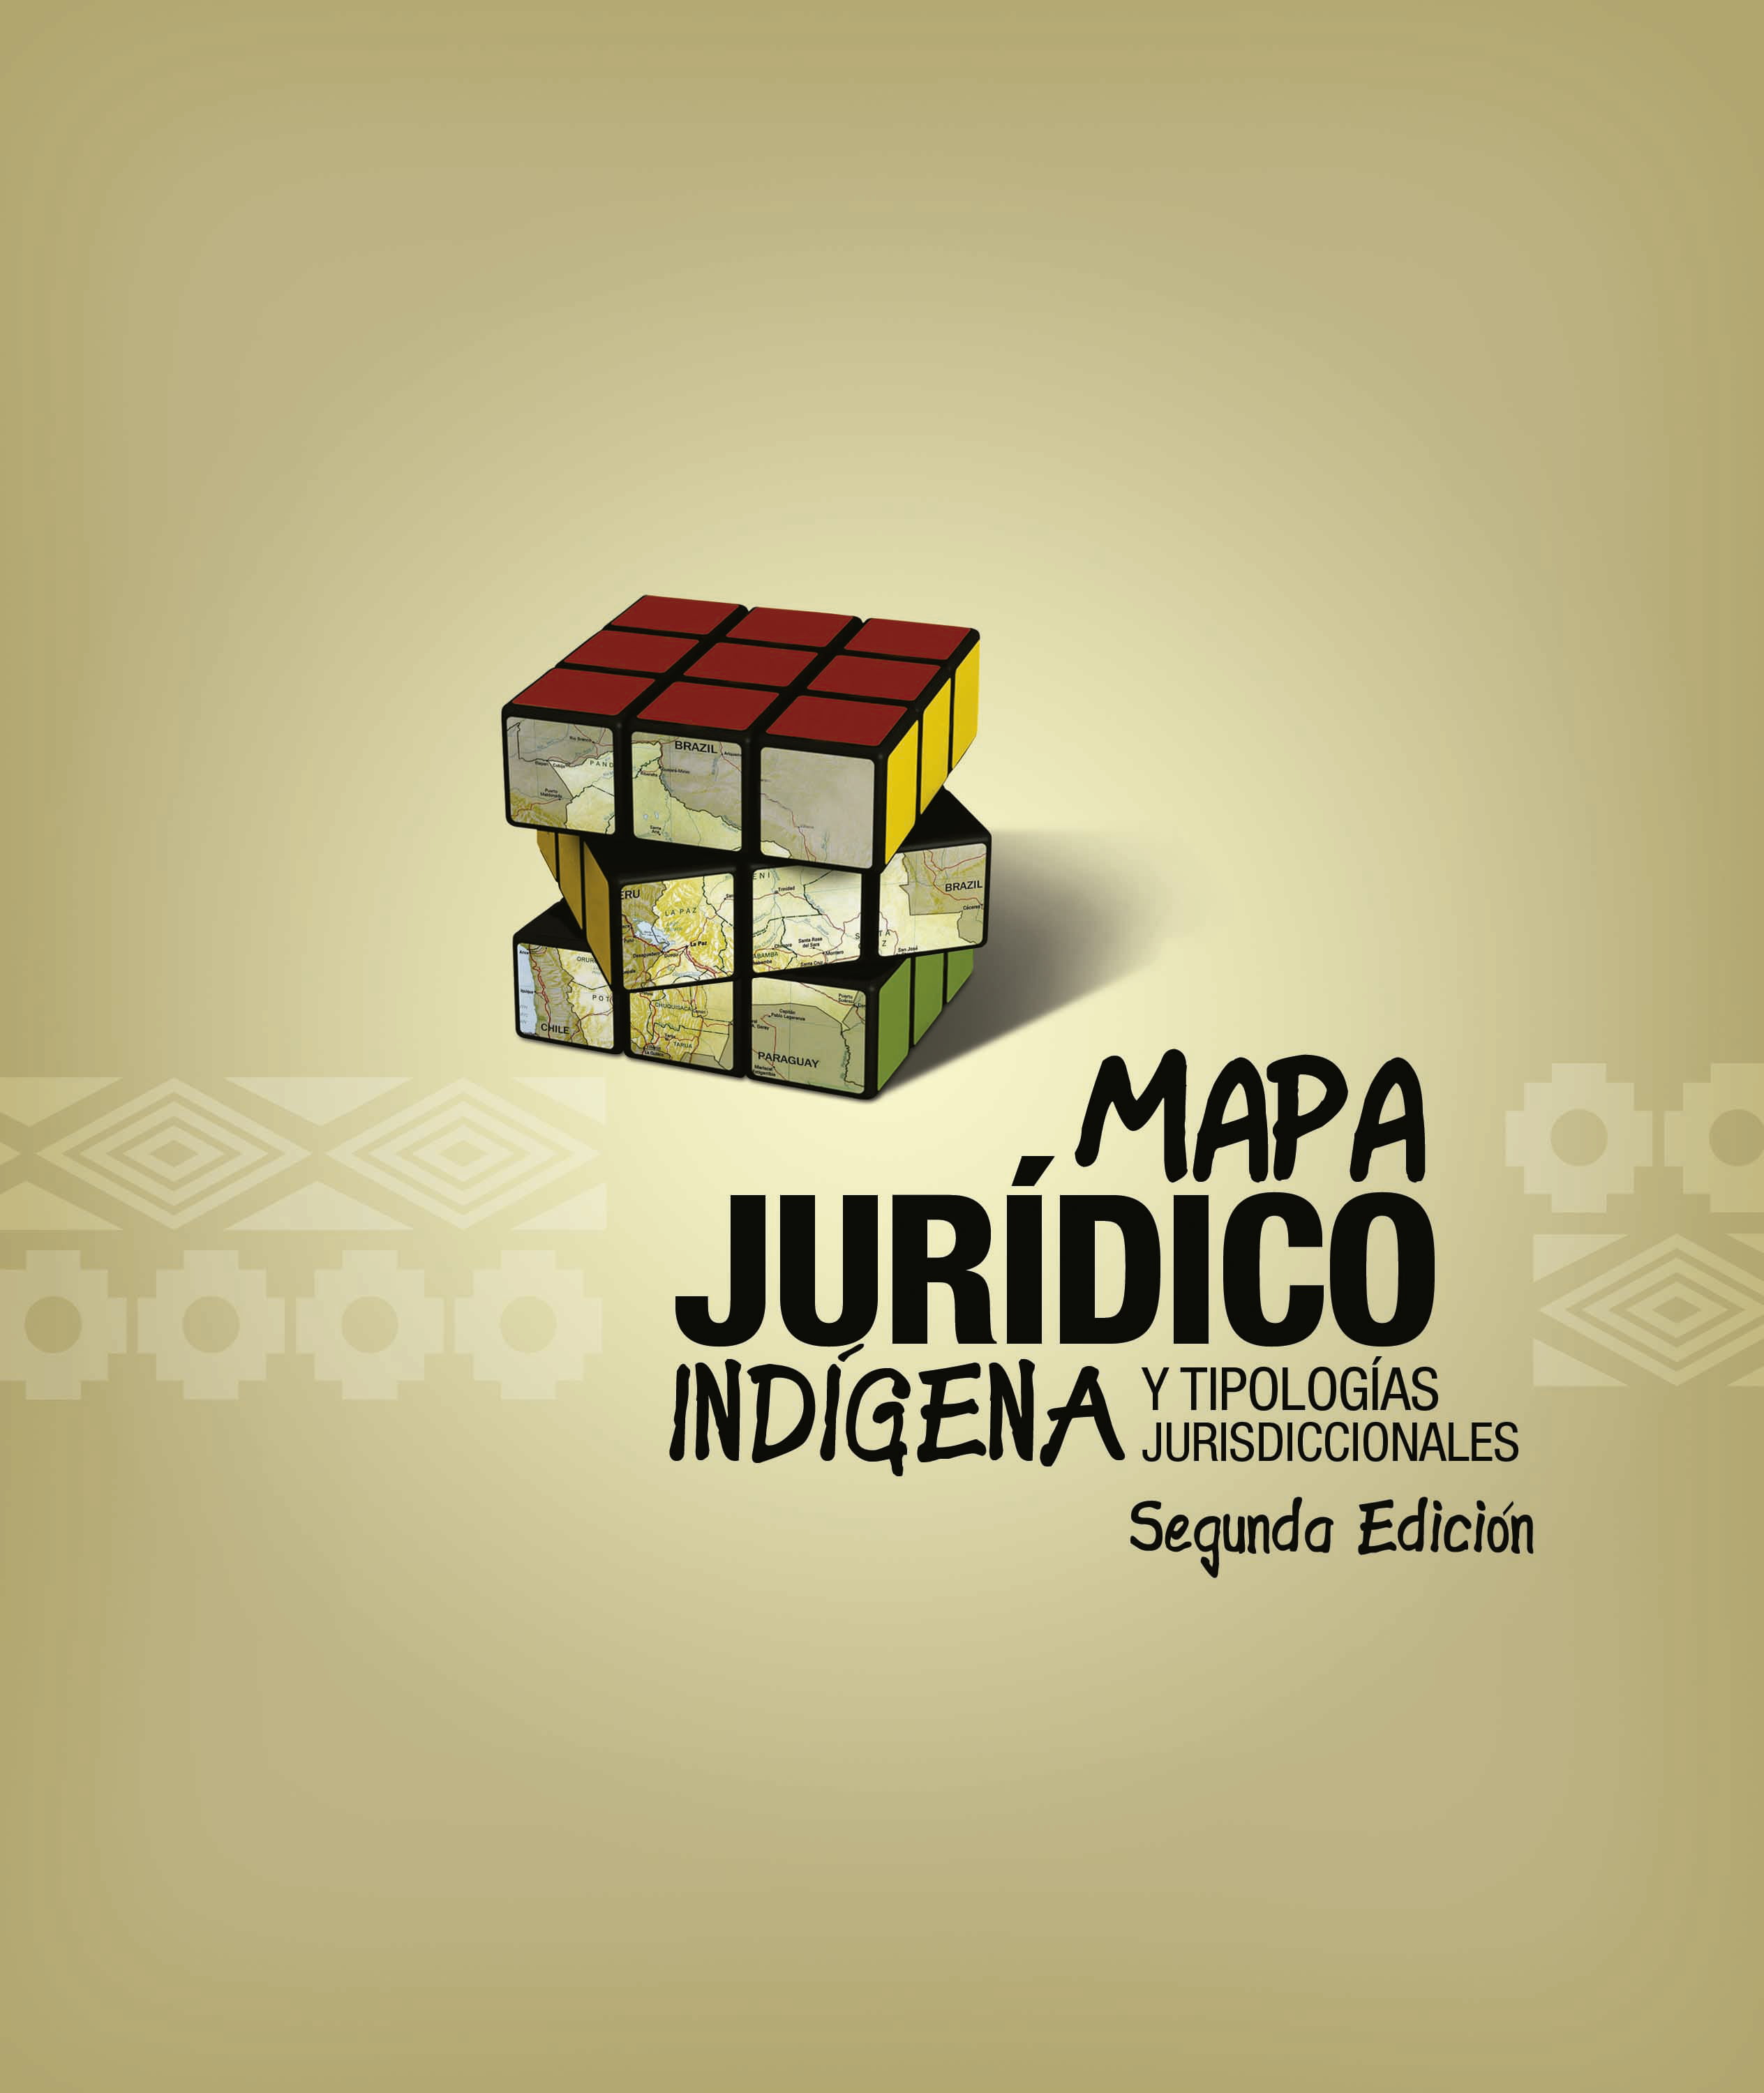 245456888-Mapa-Juridico-Indigena-y-Tipologias-Jurisdiccionales-1